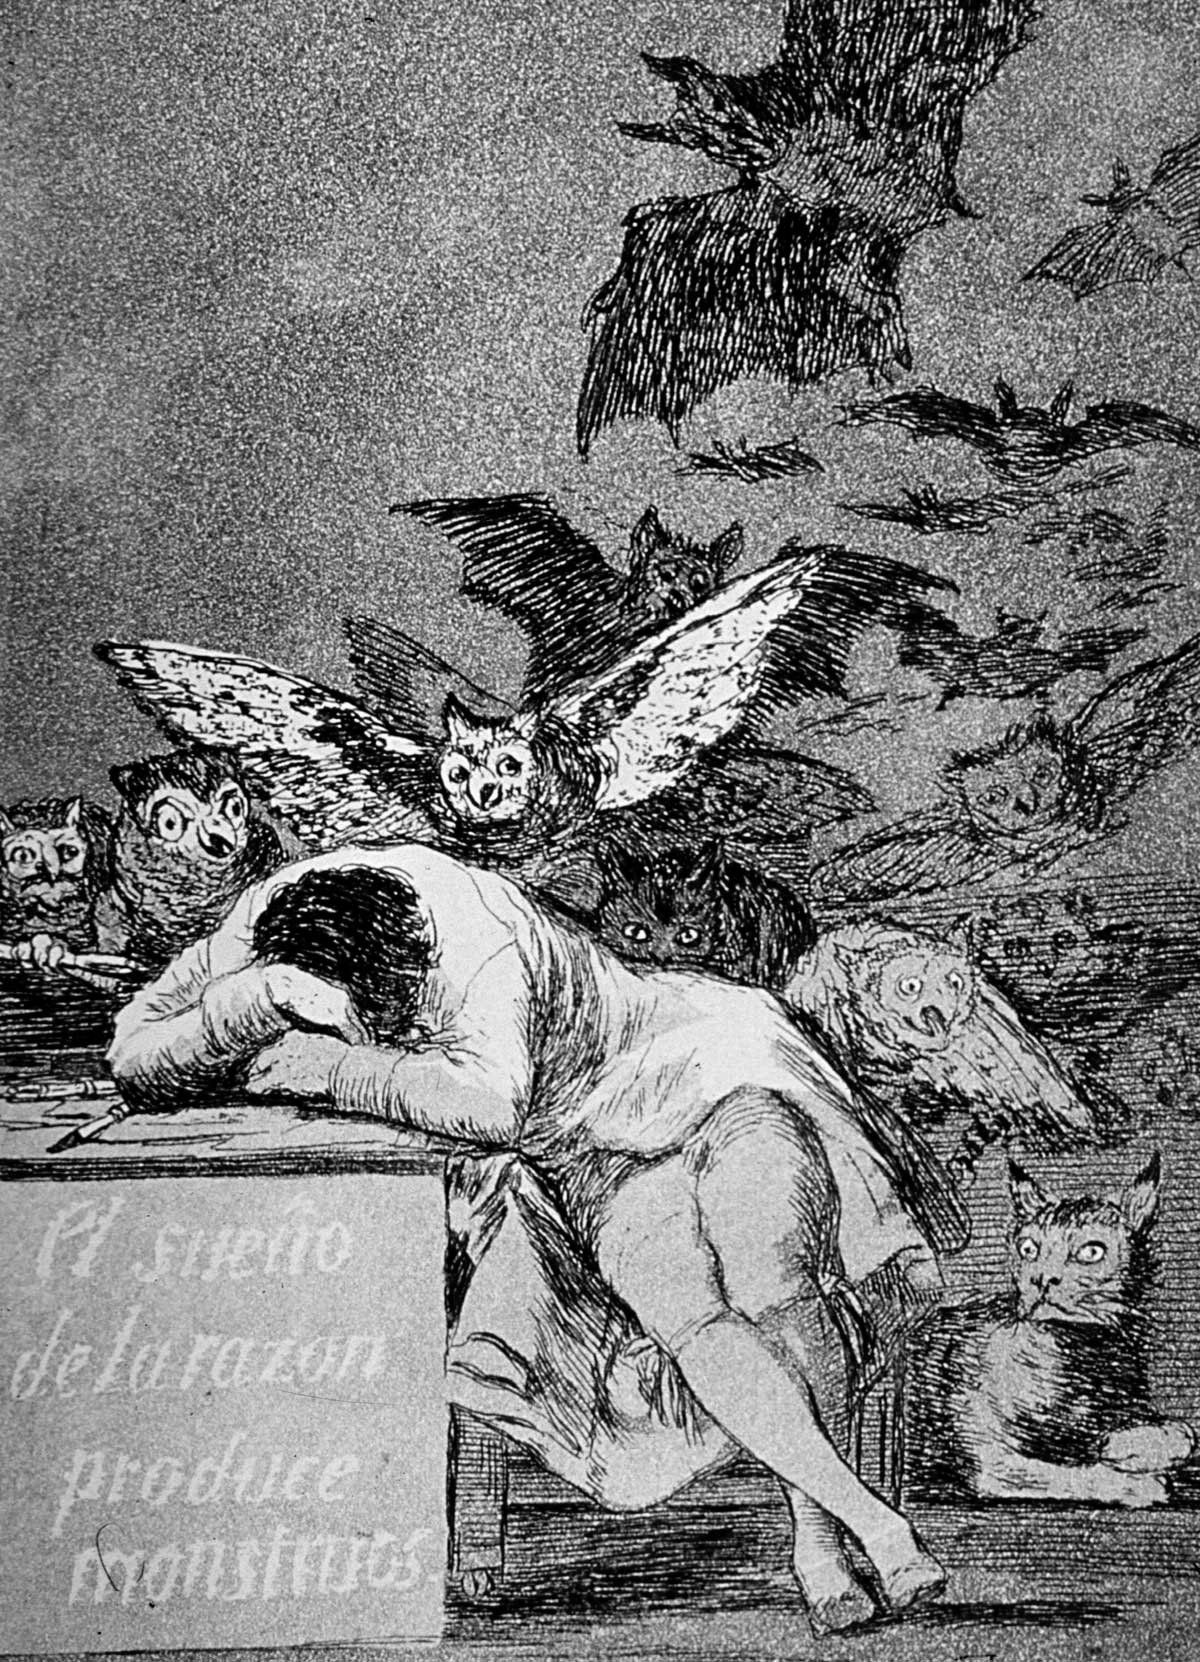 Los sueños de la razón producen monstruos, de Francisco de Goya.